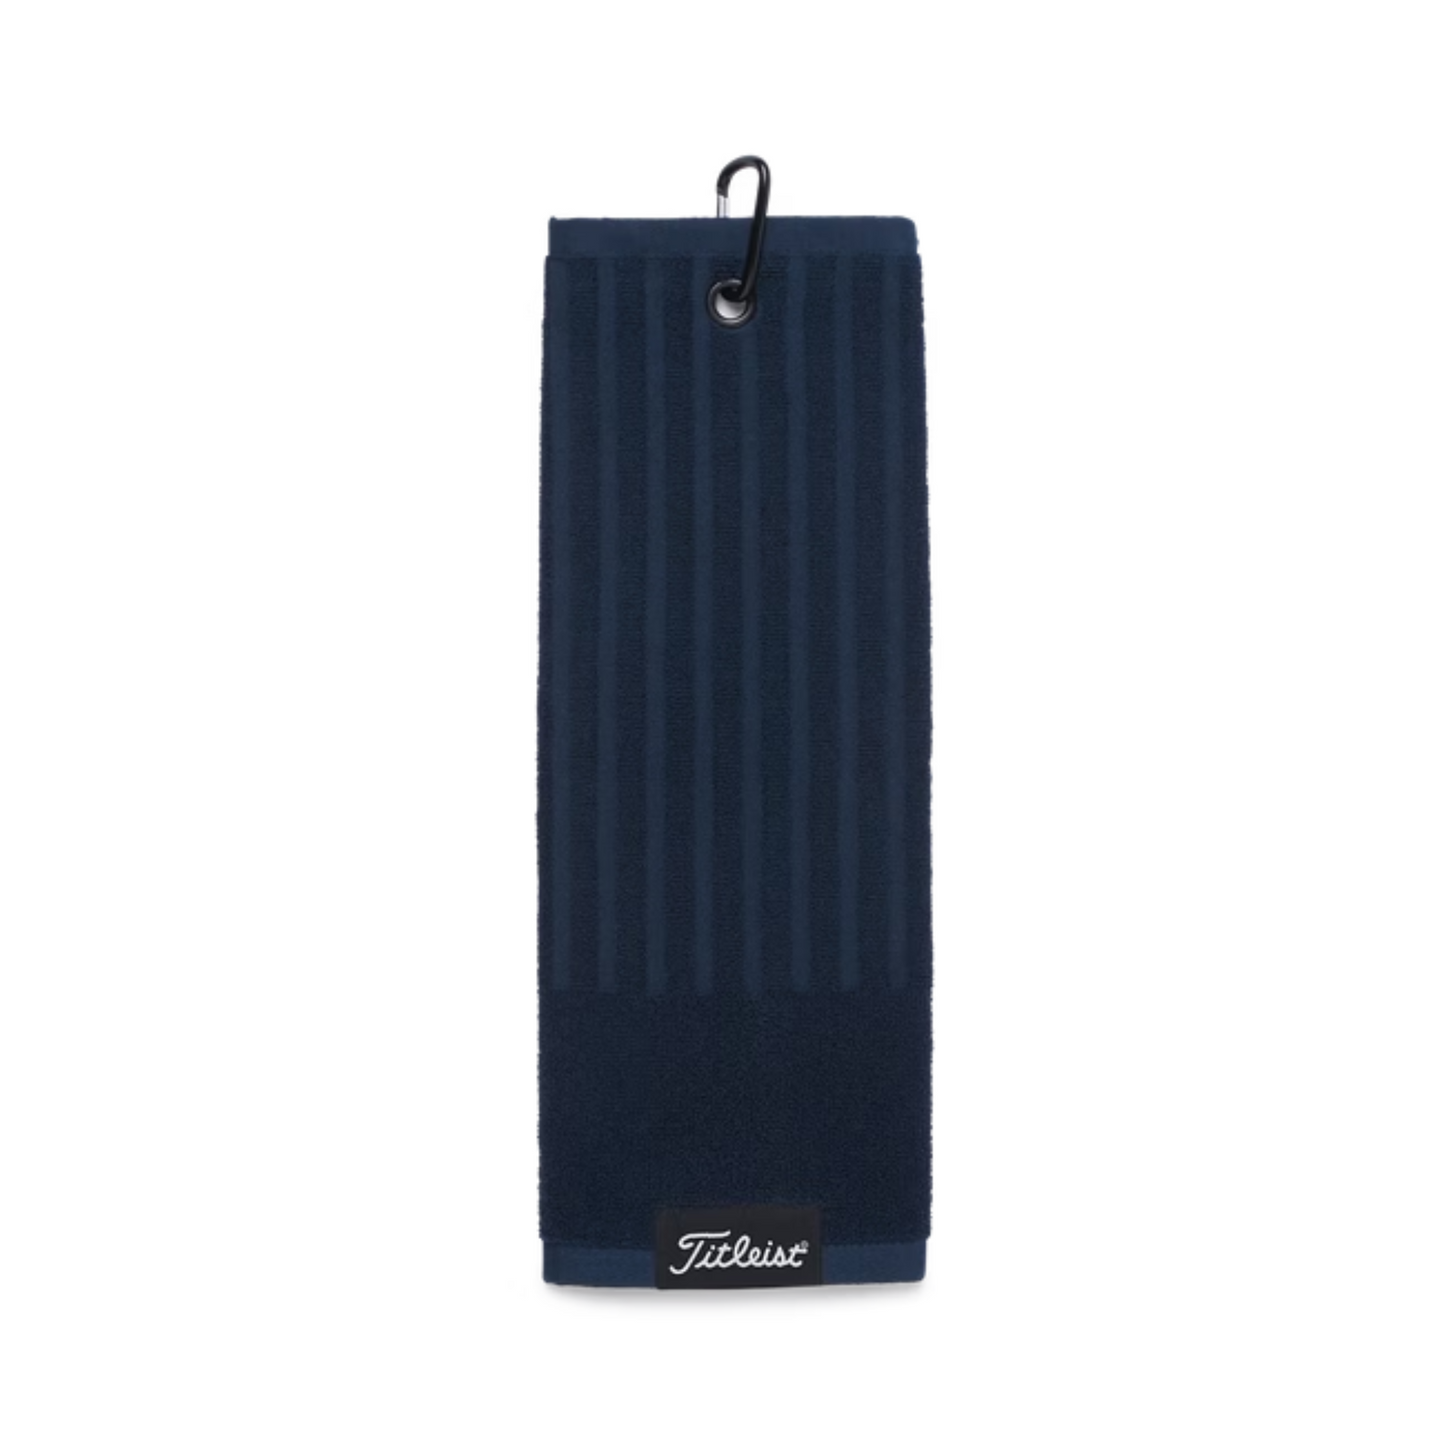 Titleist Trifold Golf Towel Navy Blue  